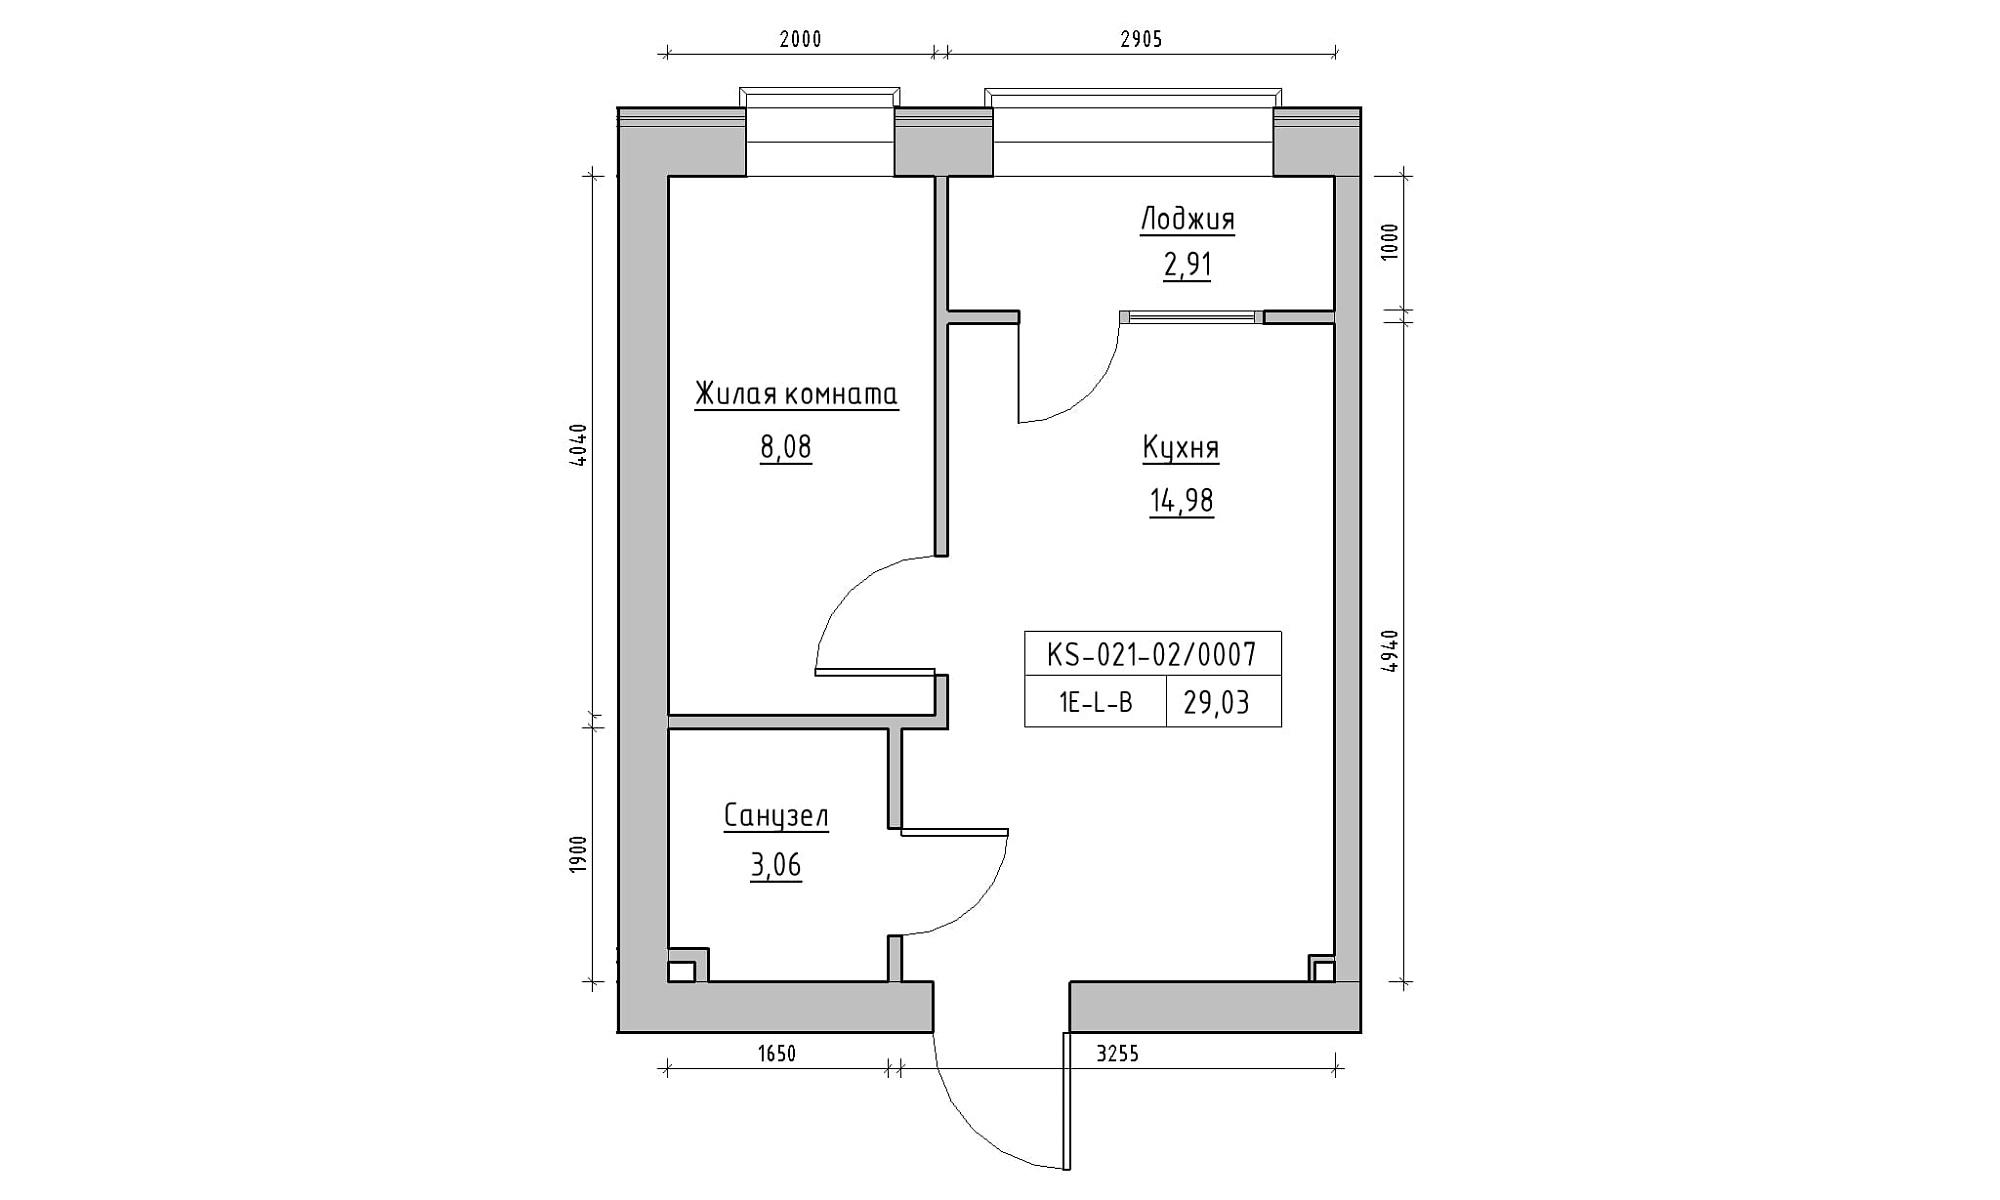 Планировка 1-к квартира площей 29.03м2, KS-021-02/0007.